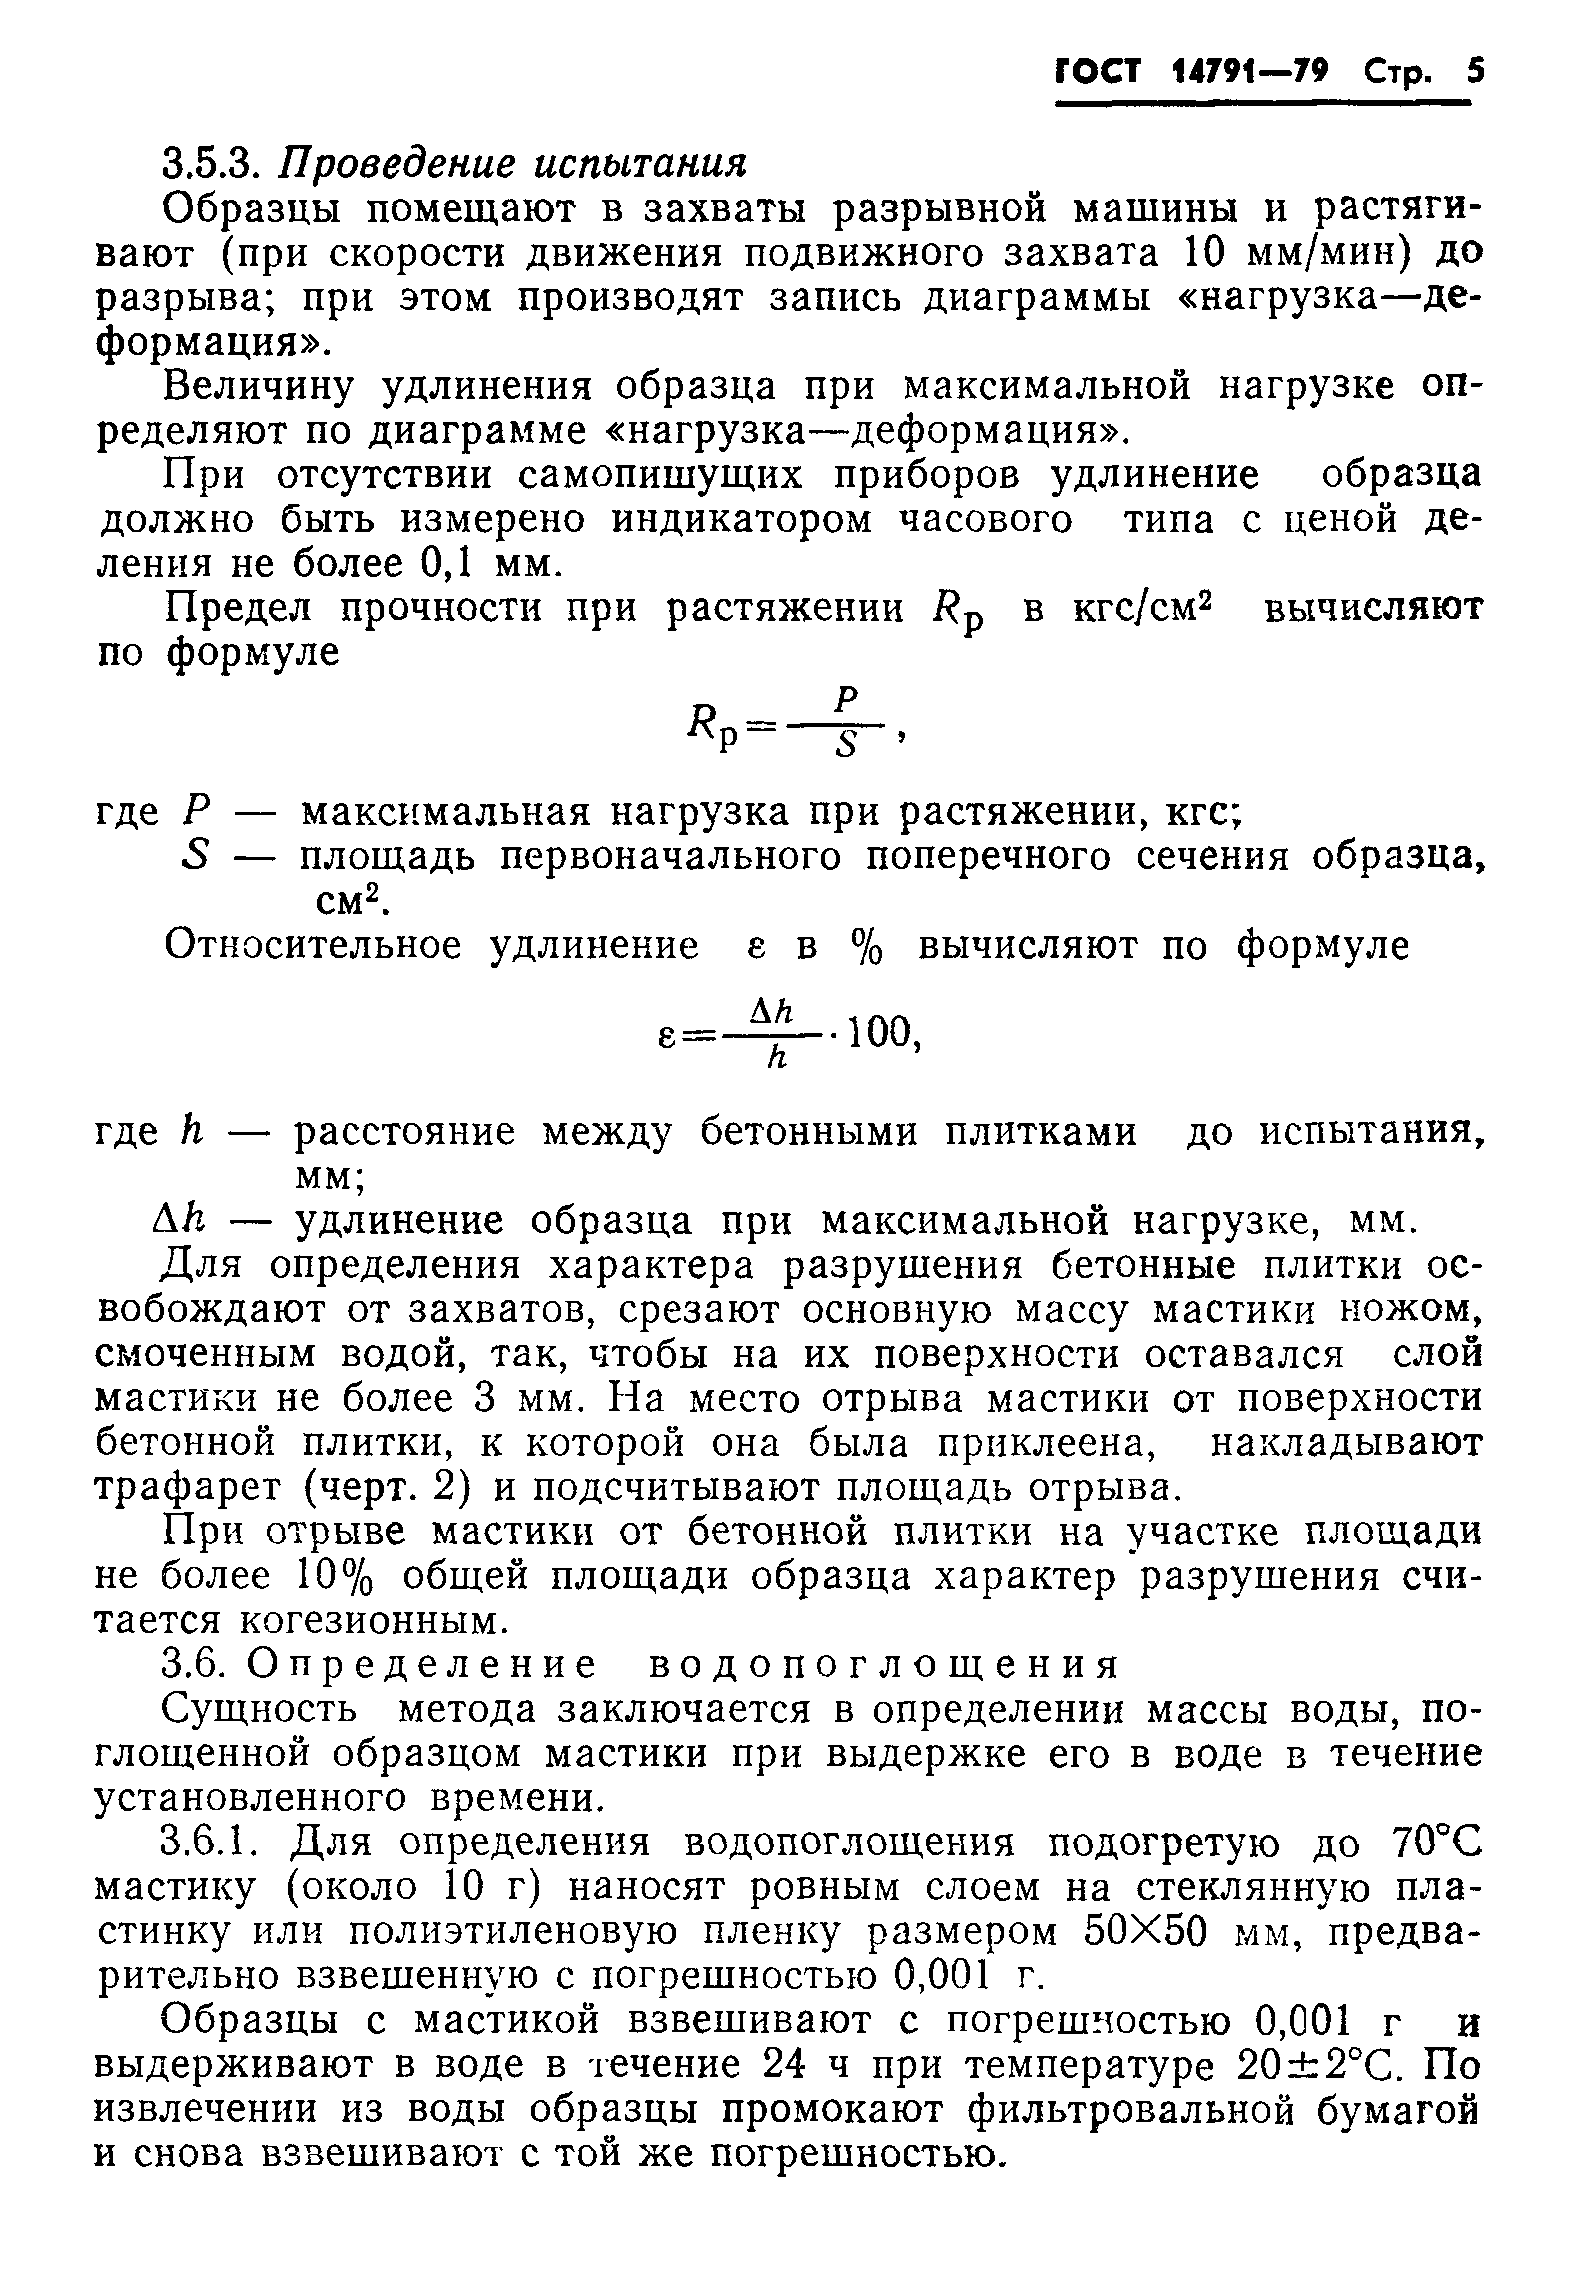 Мастика МГНС ГОСТ 14791-79